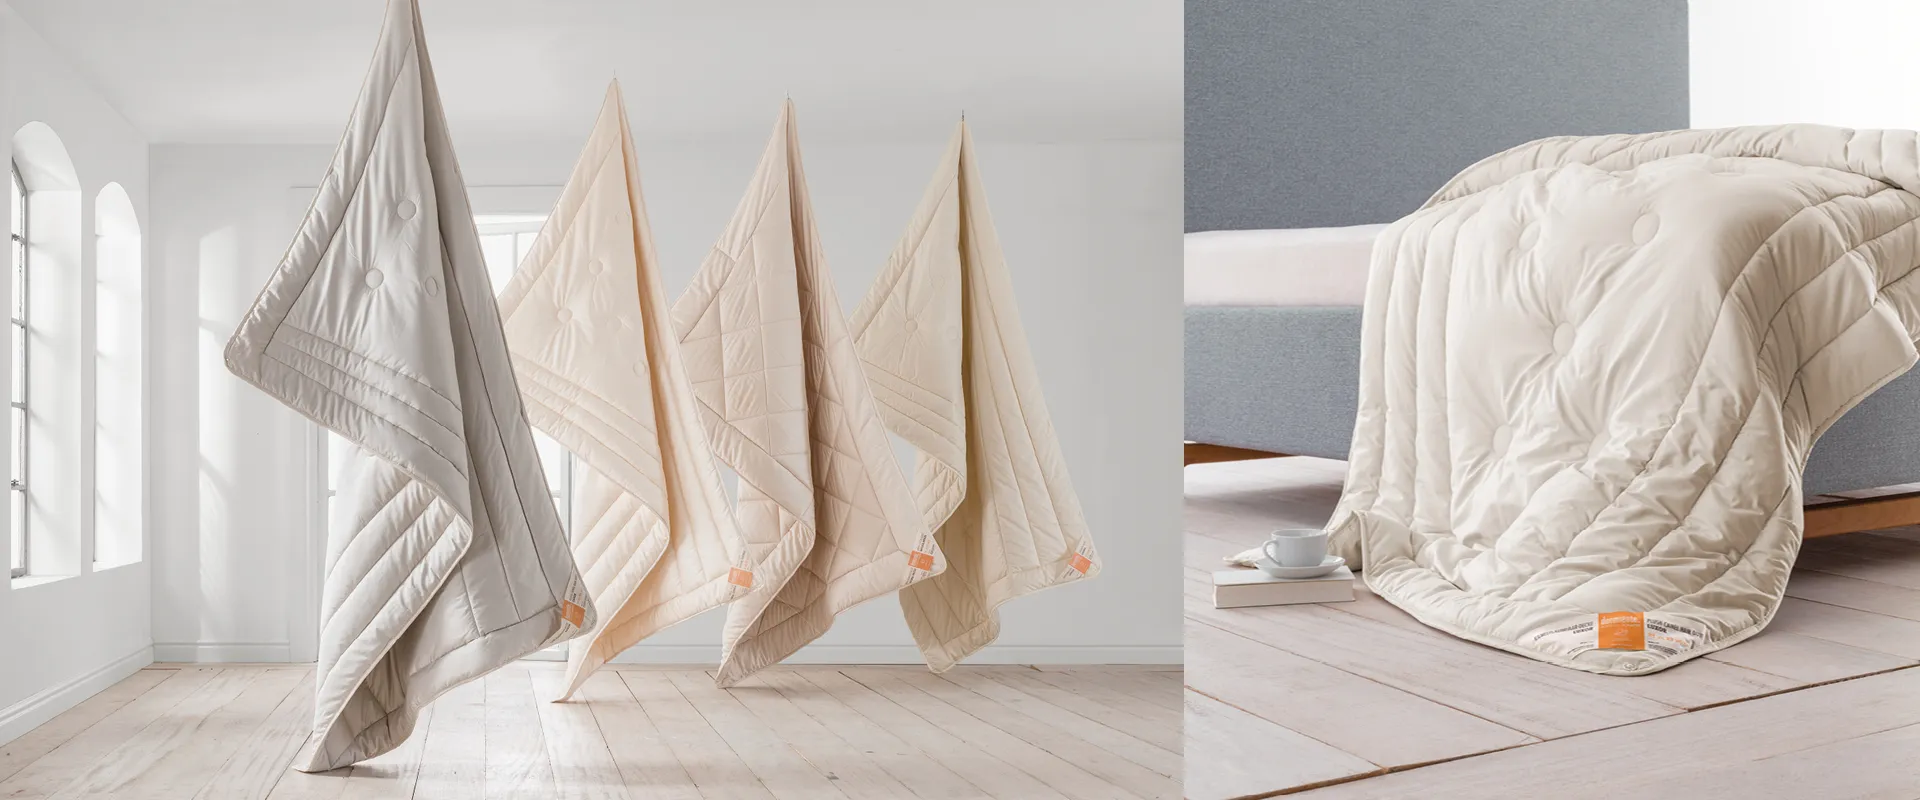 Decken von dormiente® aus Naturmaterialien nebeneinander aufgehängt